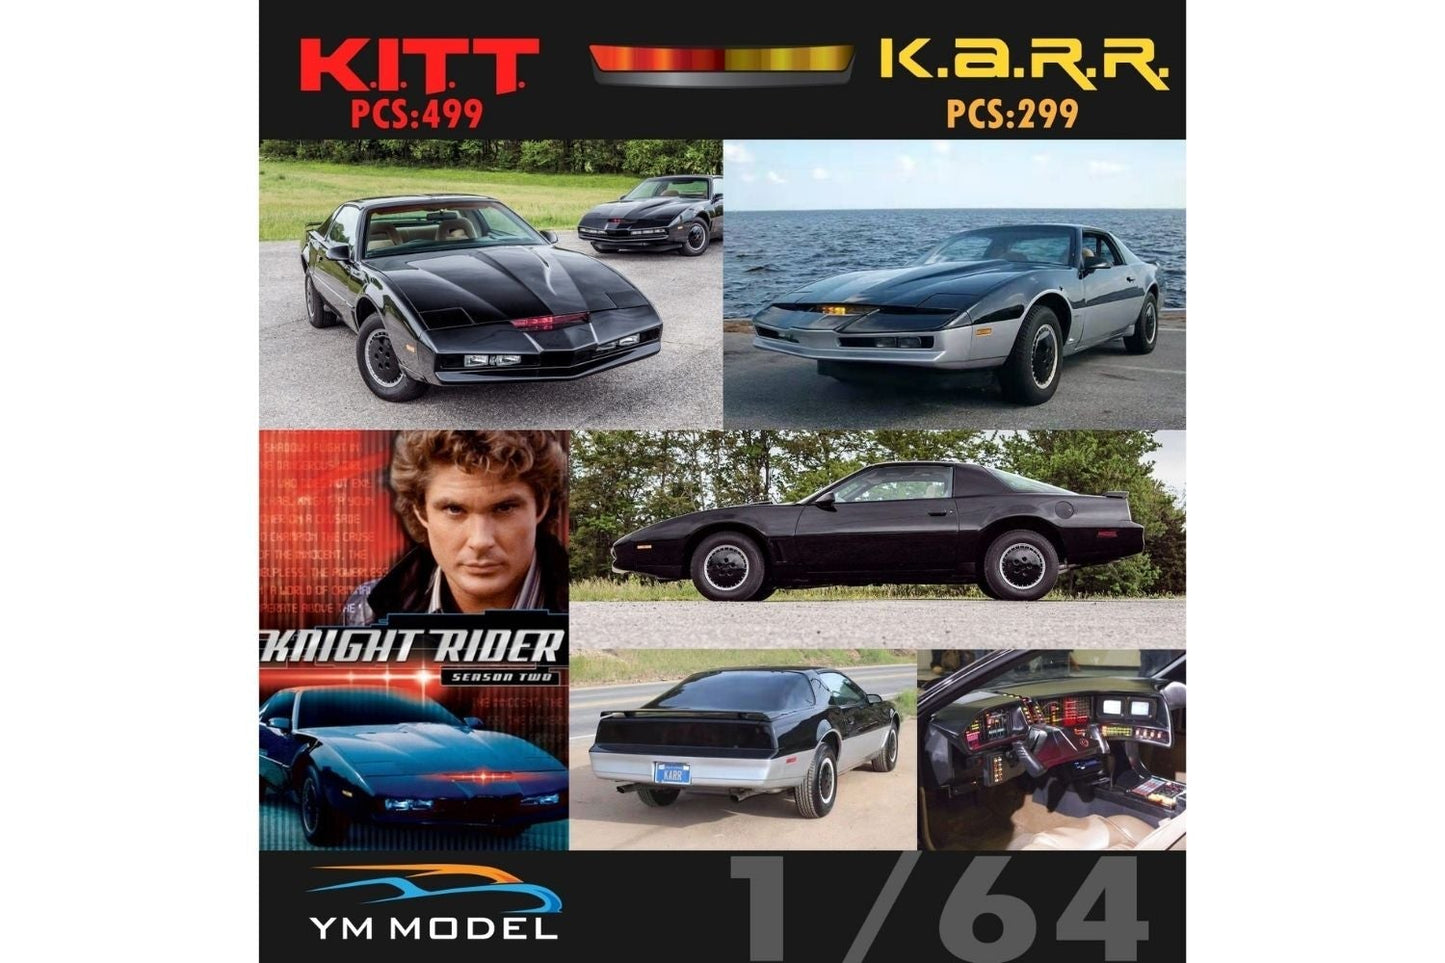 YM Model 1/64 Knight Rider "K.A.R.R" Pontiac Firebird